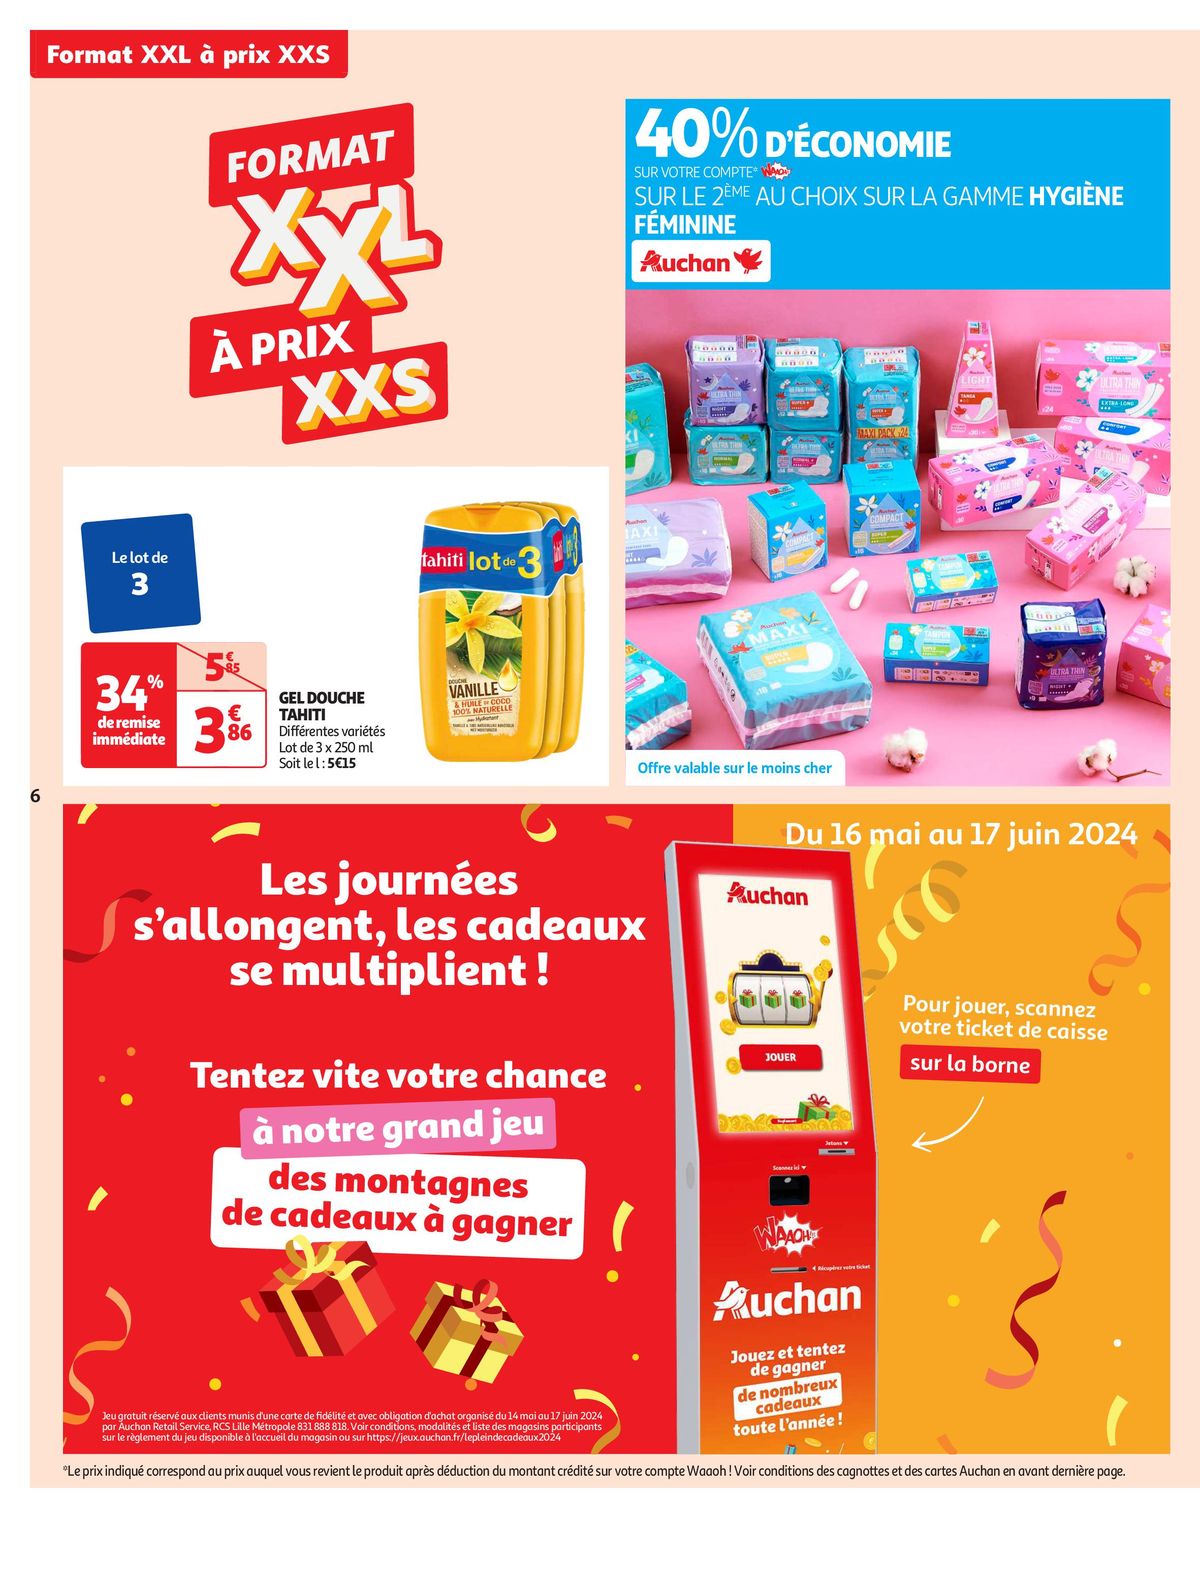 Catalogue Format XXL à prix XXS dans votre supermarché, page 00006